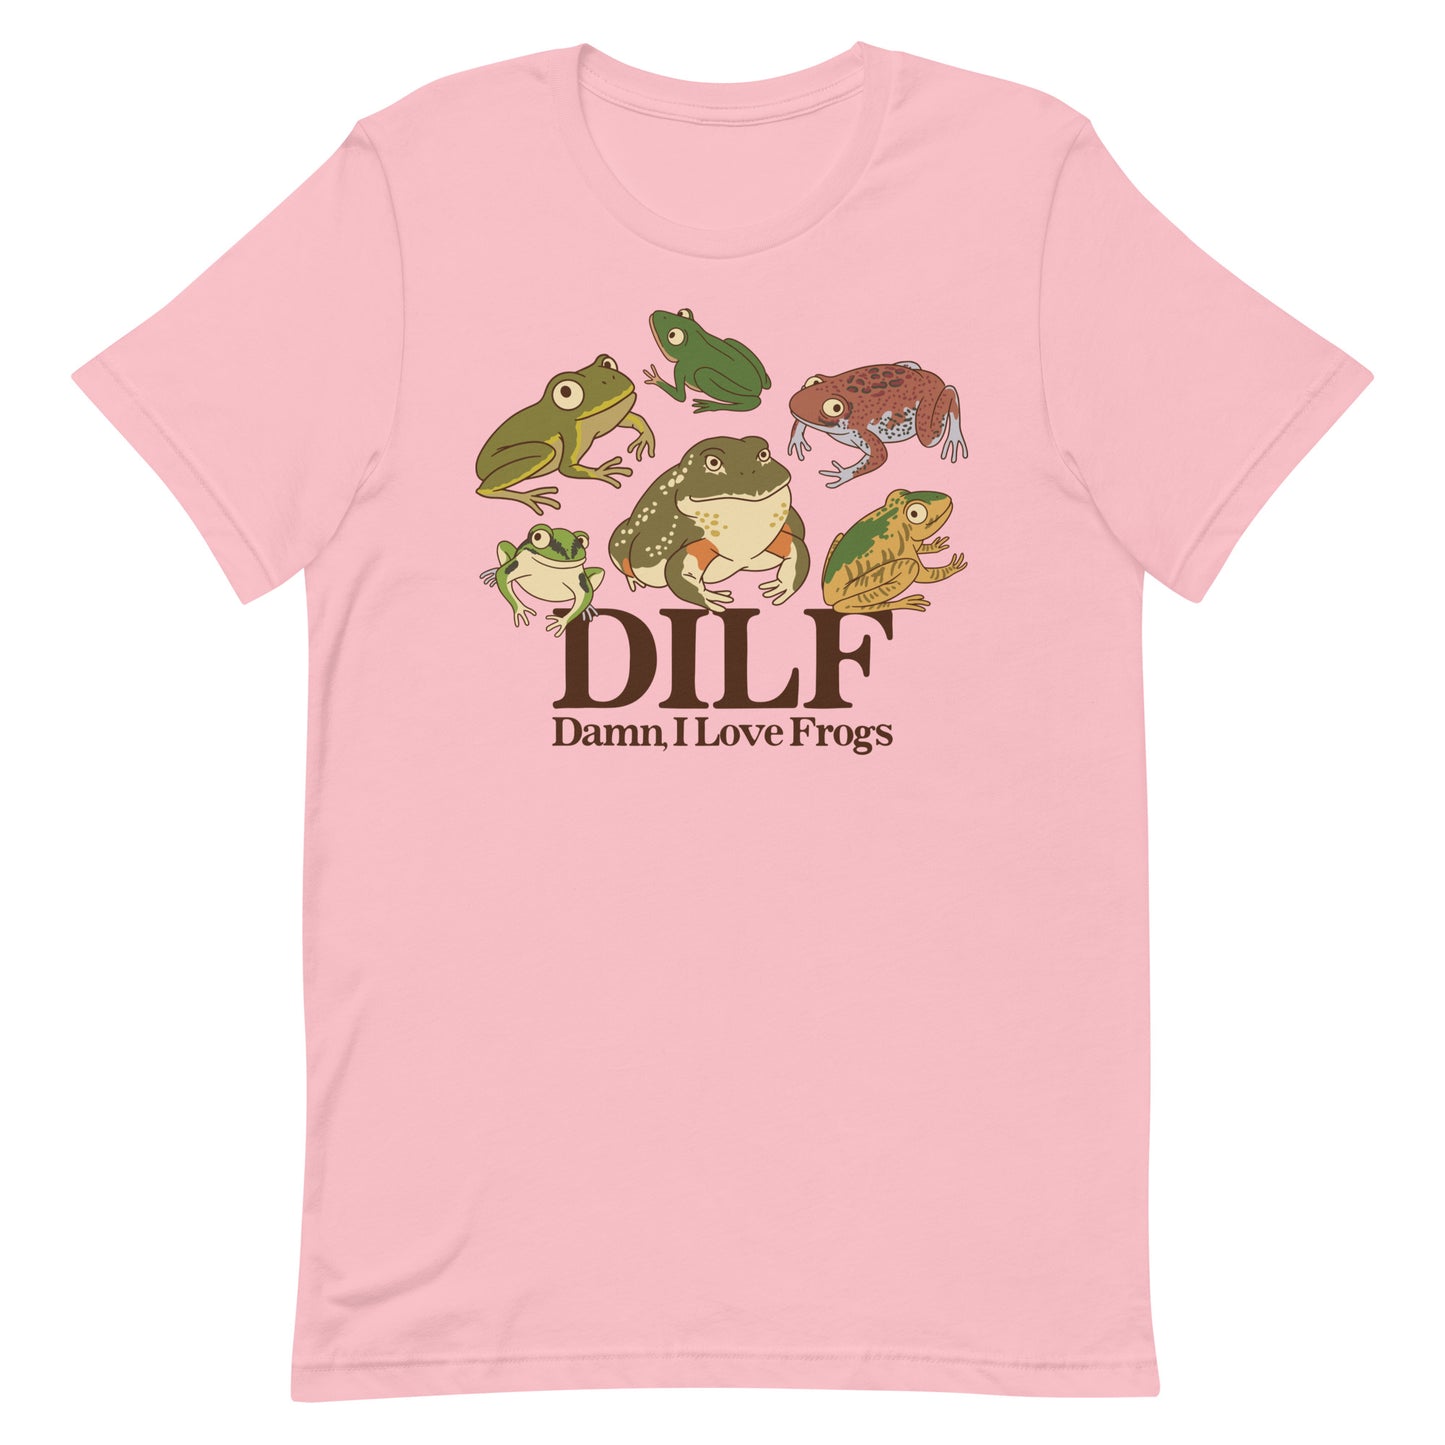 DILF (Damn, I Love Frogs) Unisex t-shirt